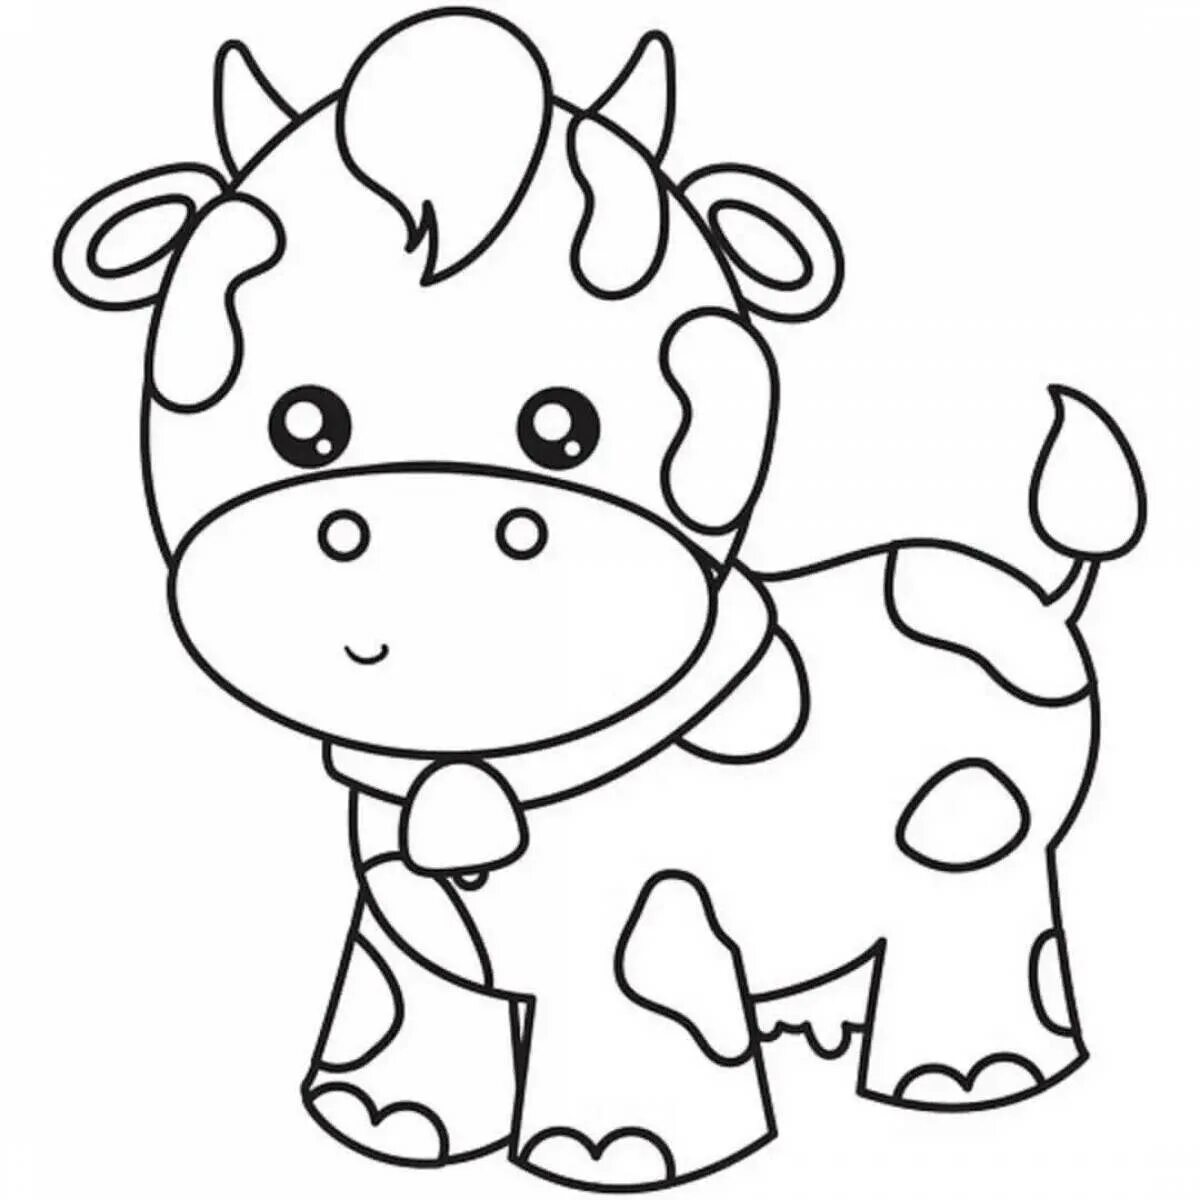 Раскраски для детей 3 года коровы. Раскраска корова. Корова раскраска для малышей. Коровка раскраска для детей. Детская раскраска корова.